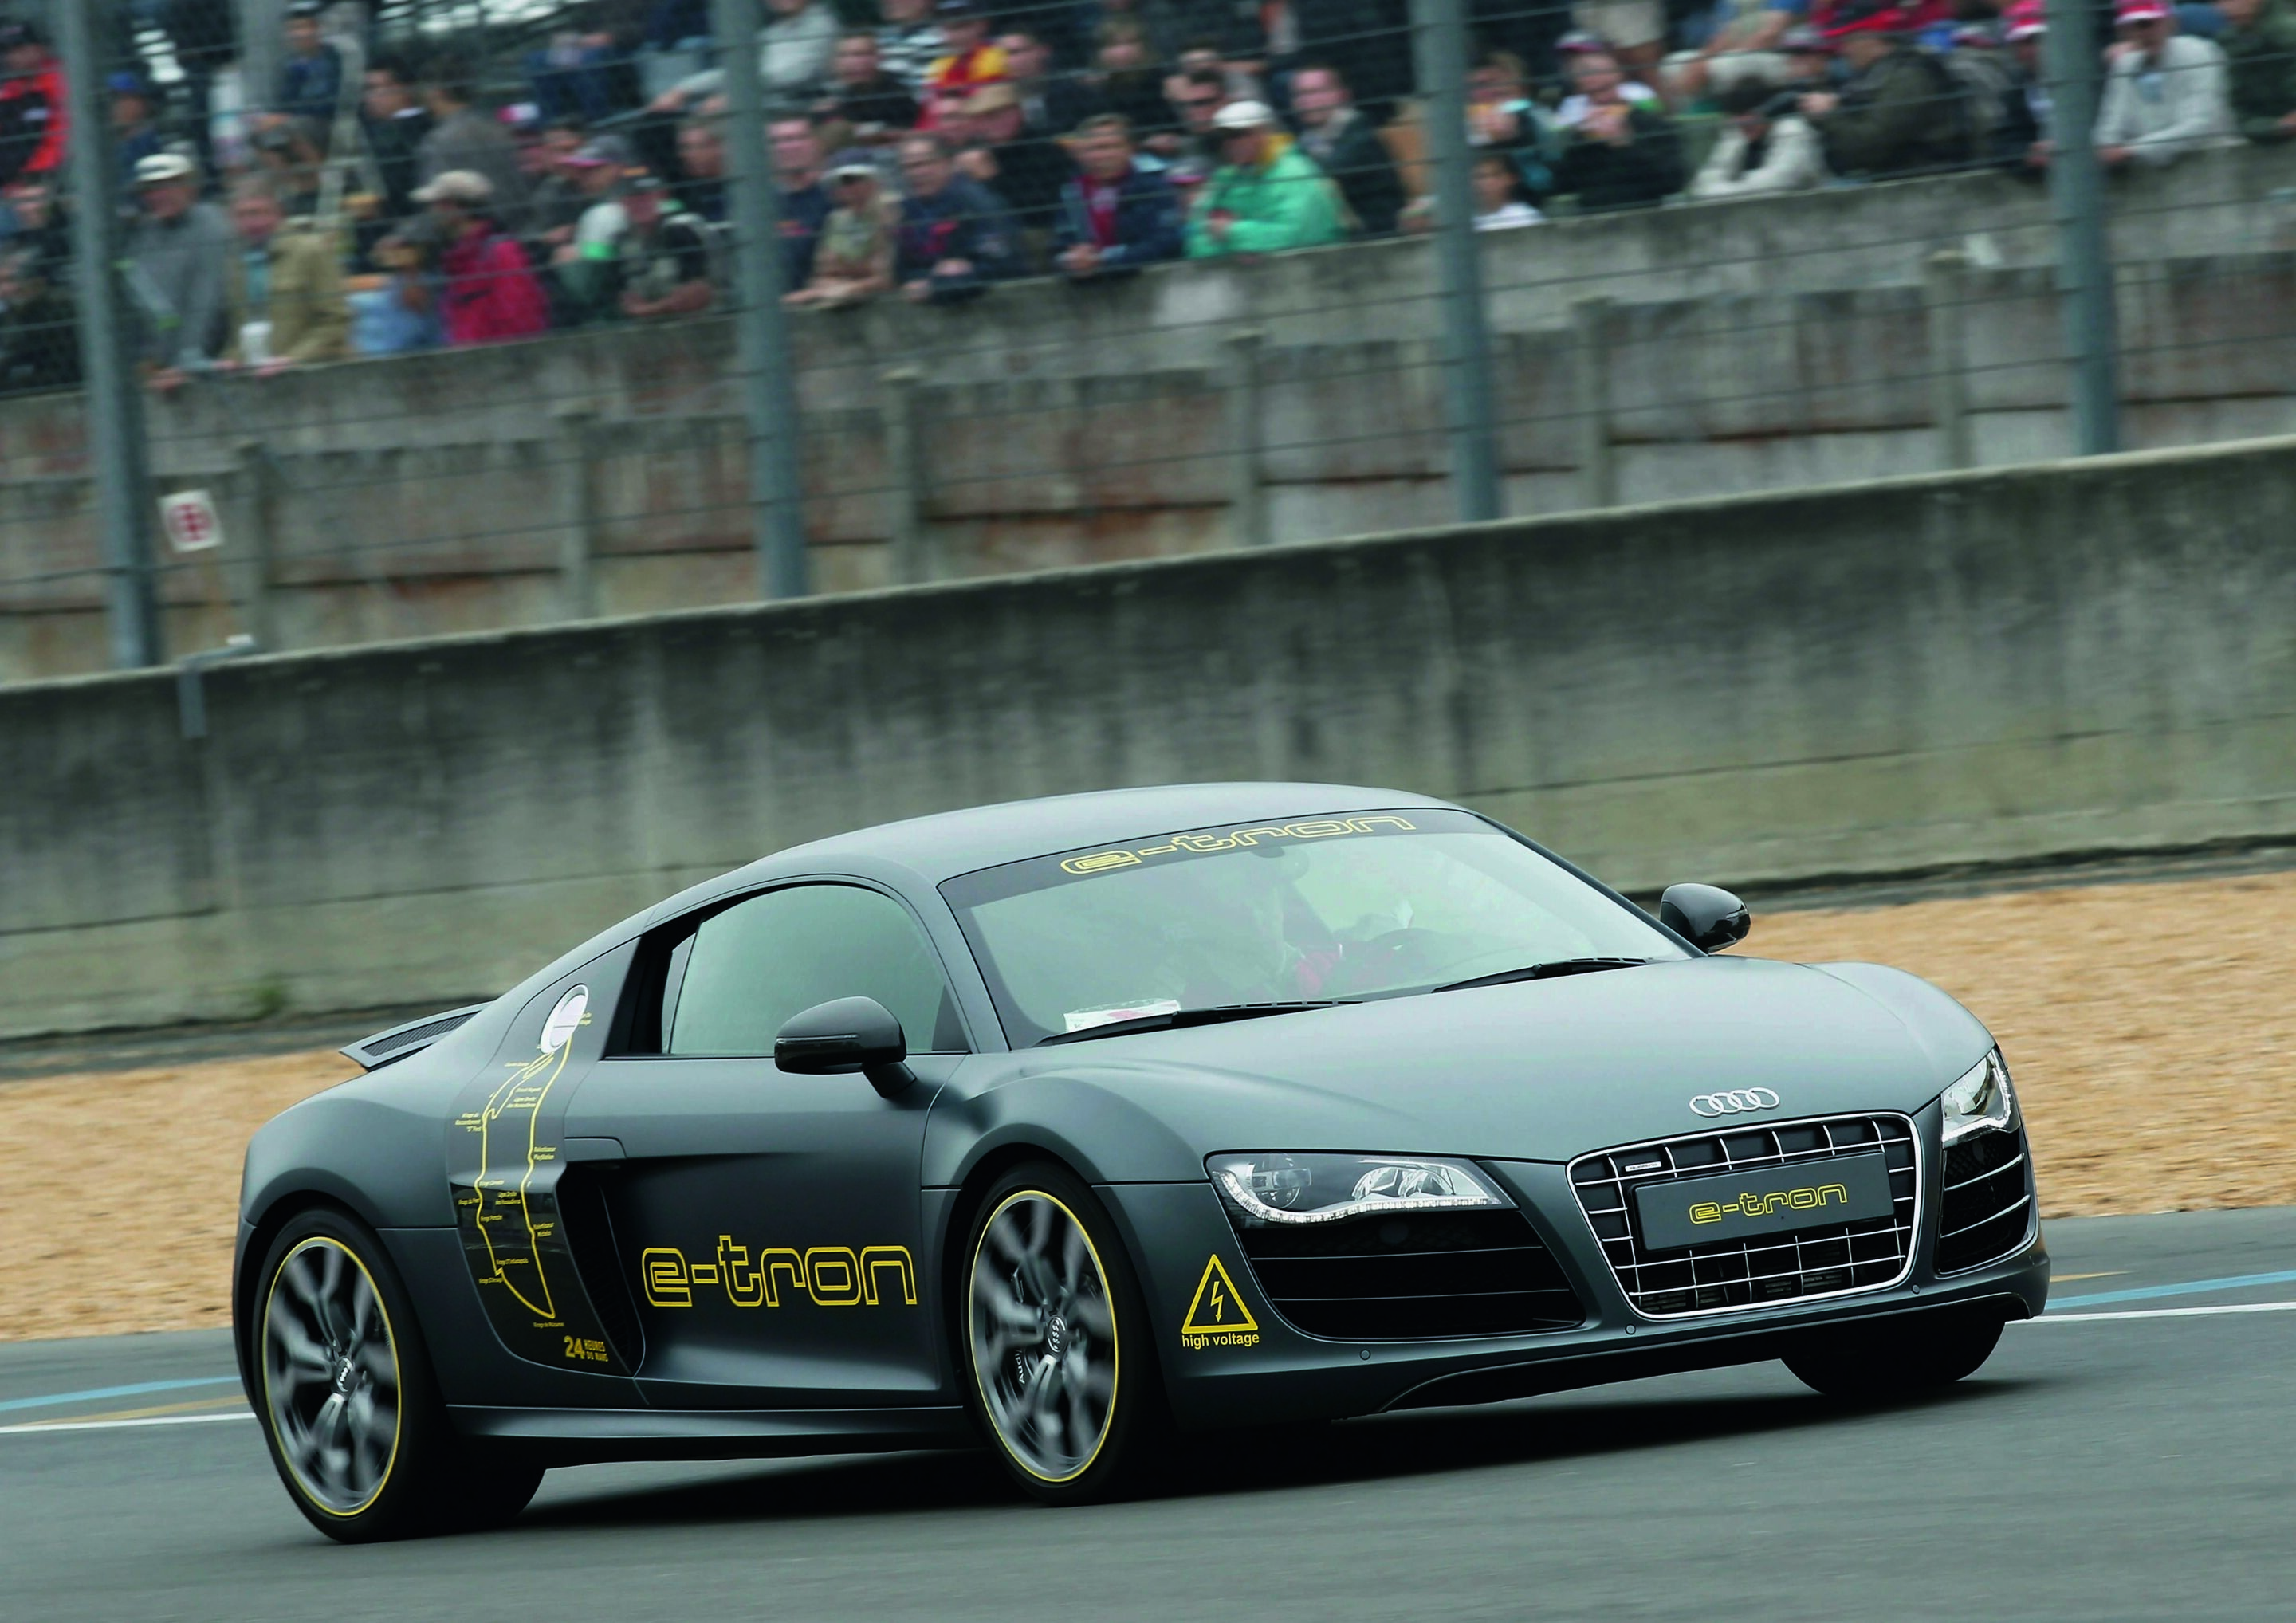 Audi präsentiert beim bedeutendsten Sportwagen-Rennen des Jahres einen Technikträger des Audi e-tron auf Basis des R8